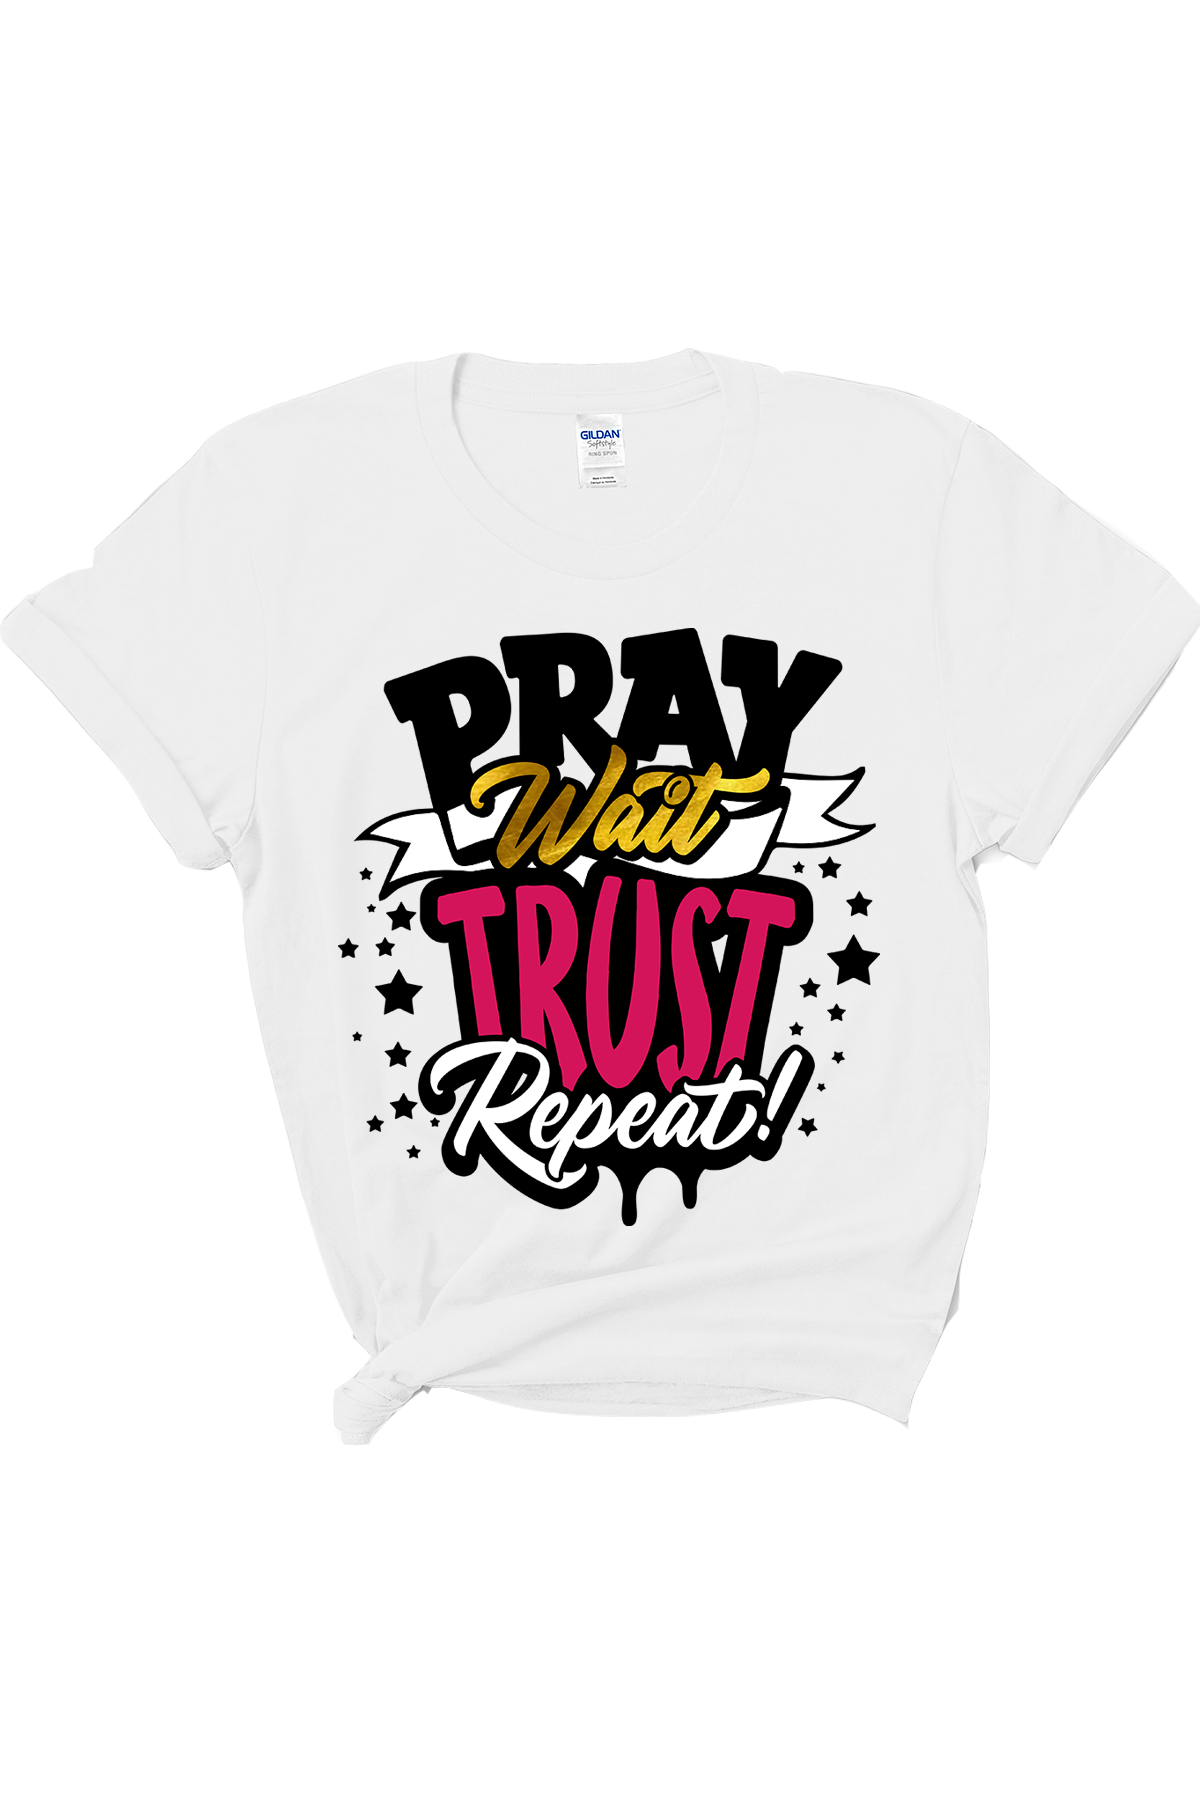 Pray Wait Trust Tee